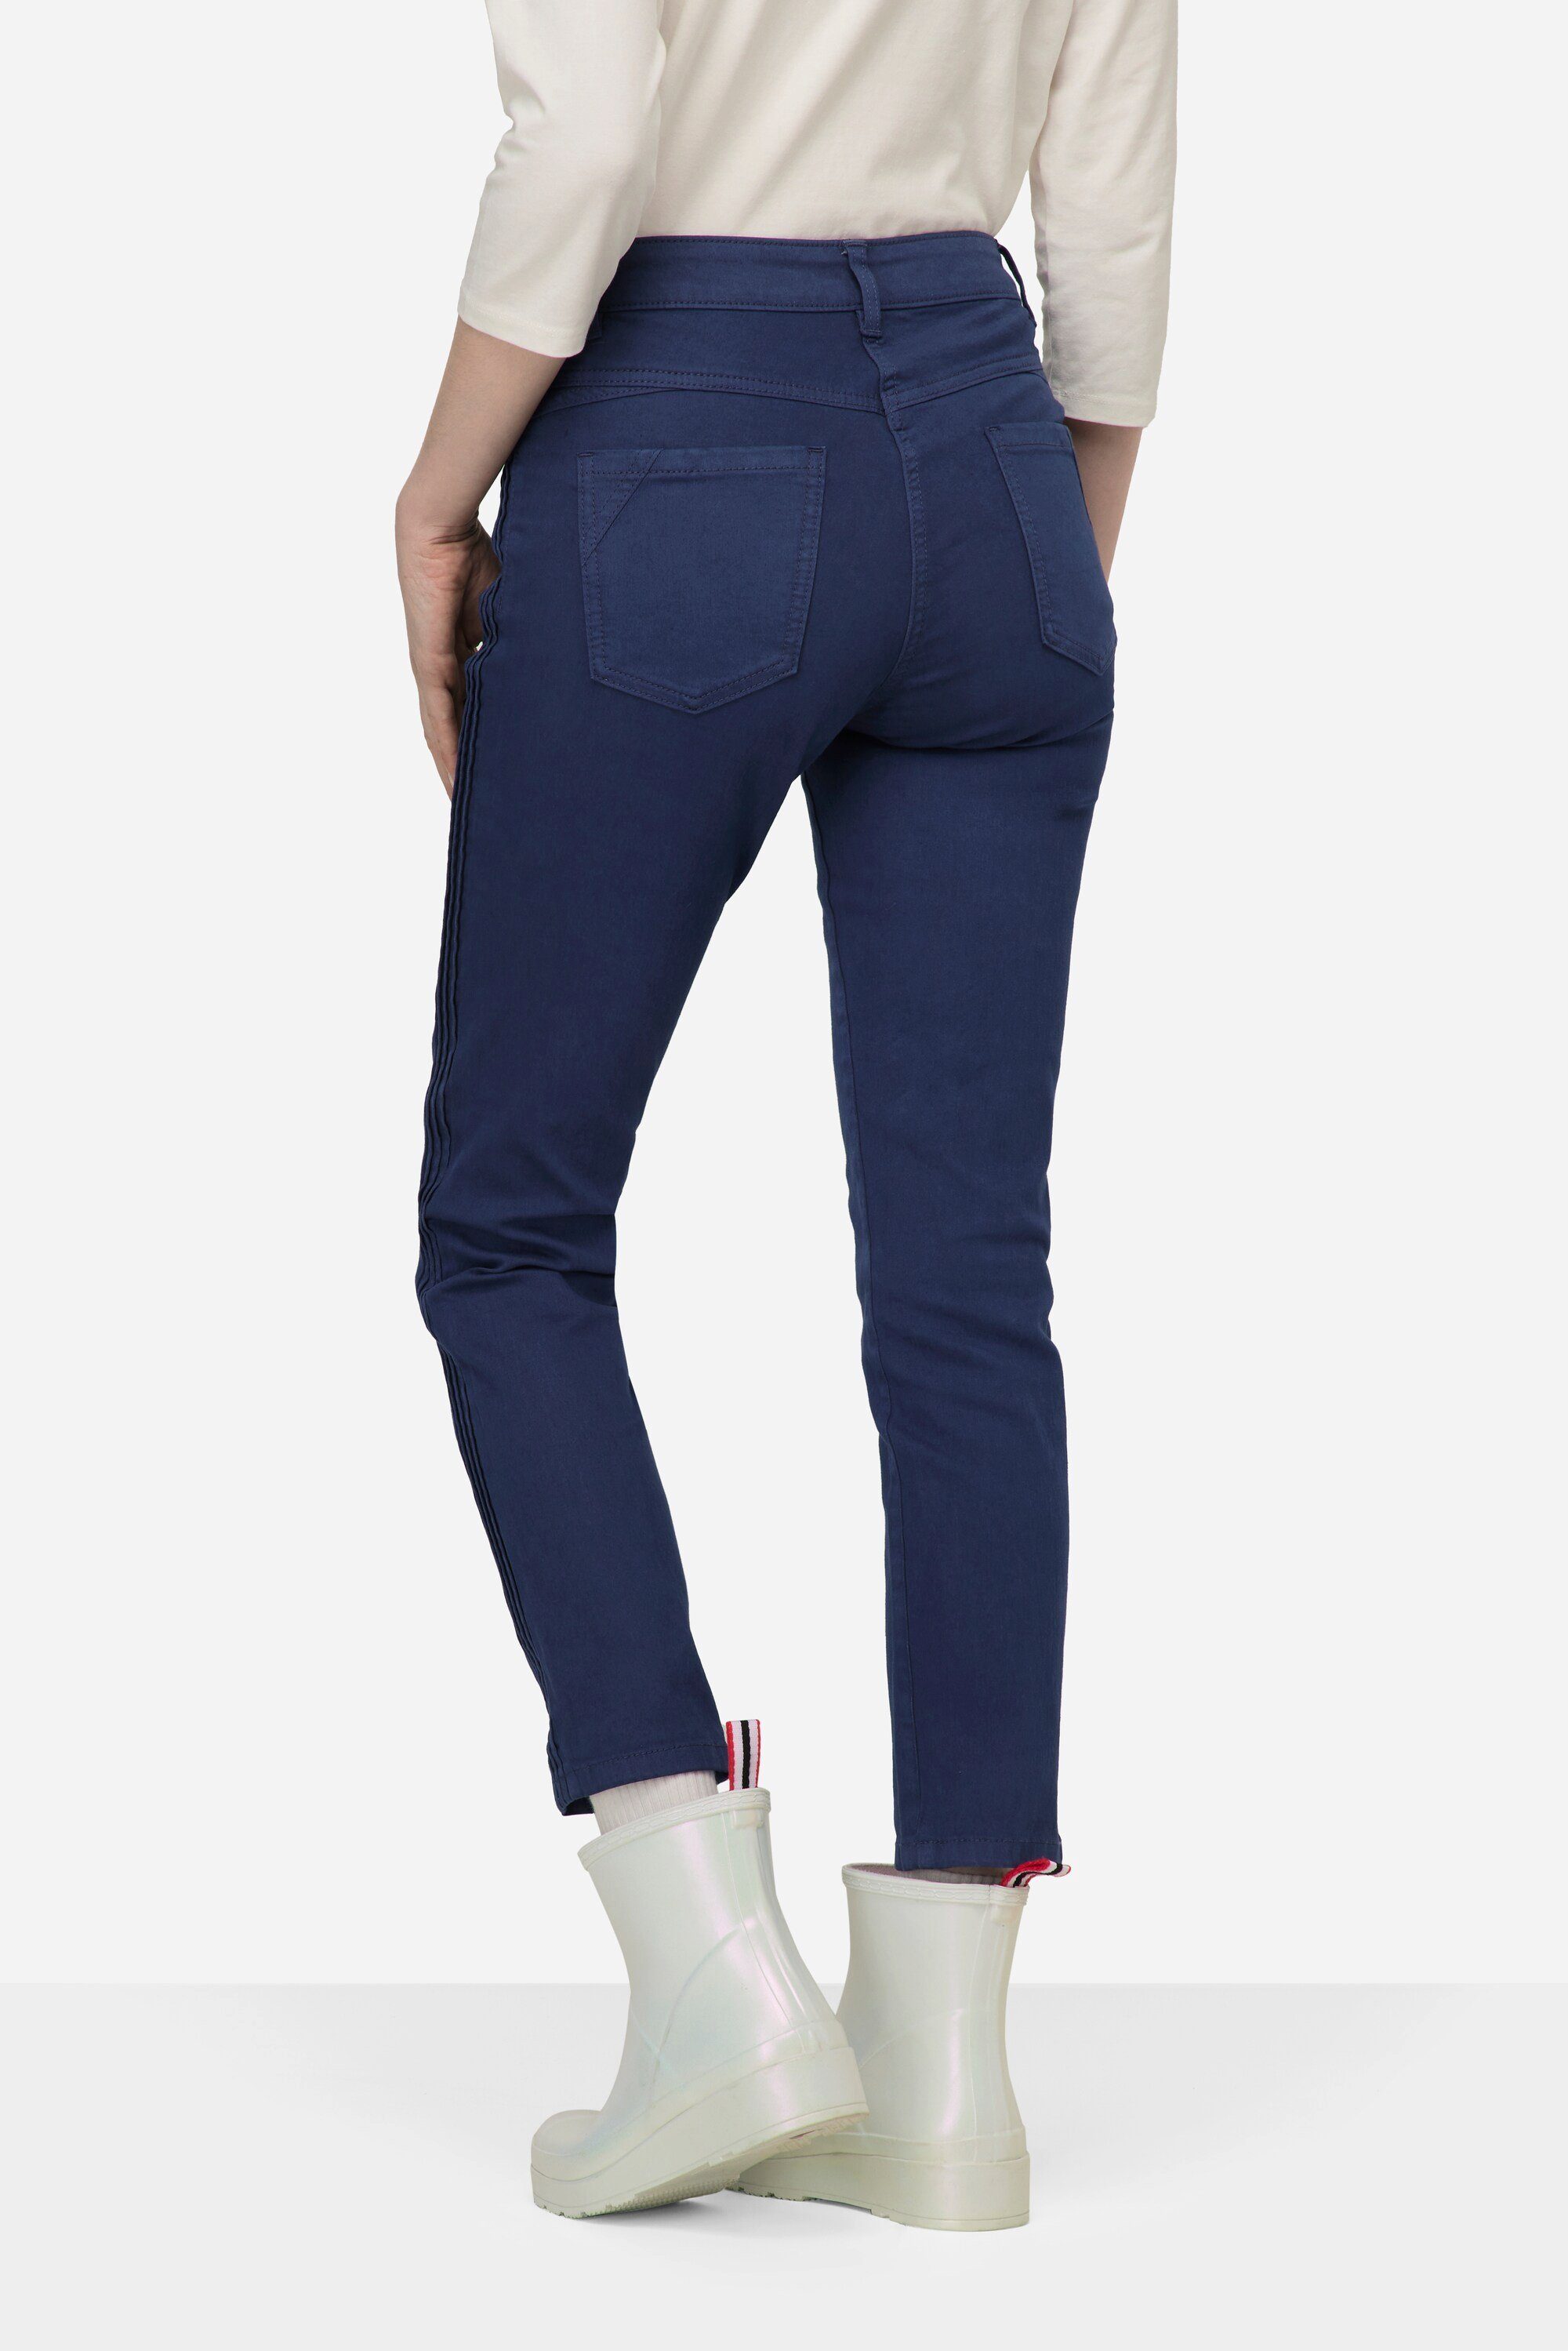 Passform seitliche Tina Zierfalten jeansblau Laurasøn 5-Pocket-Jeans Jeans gerade